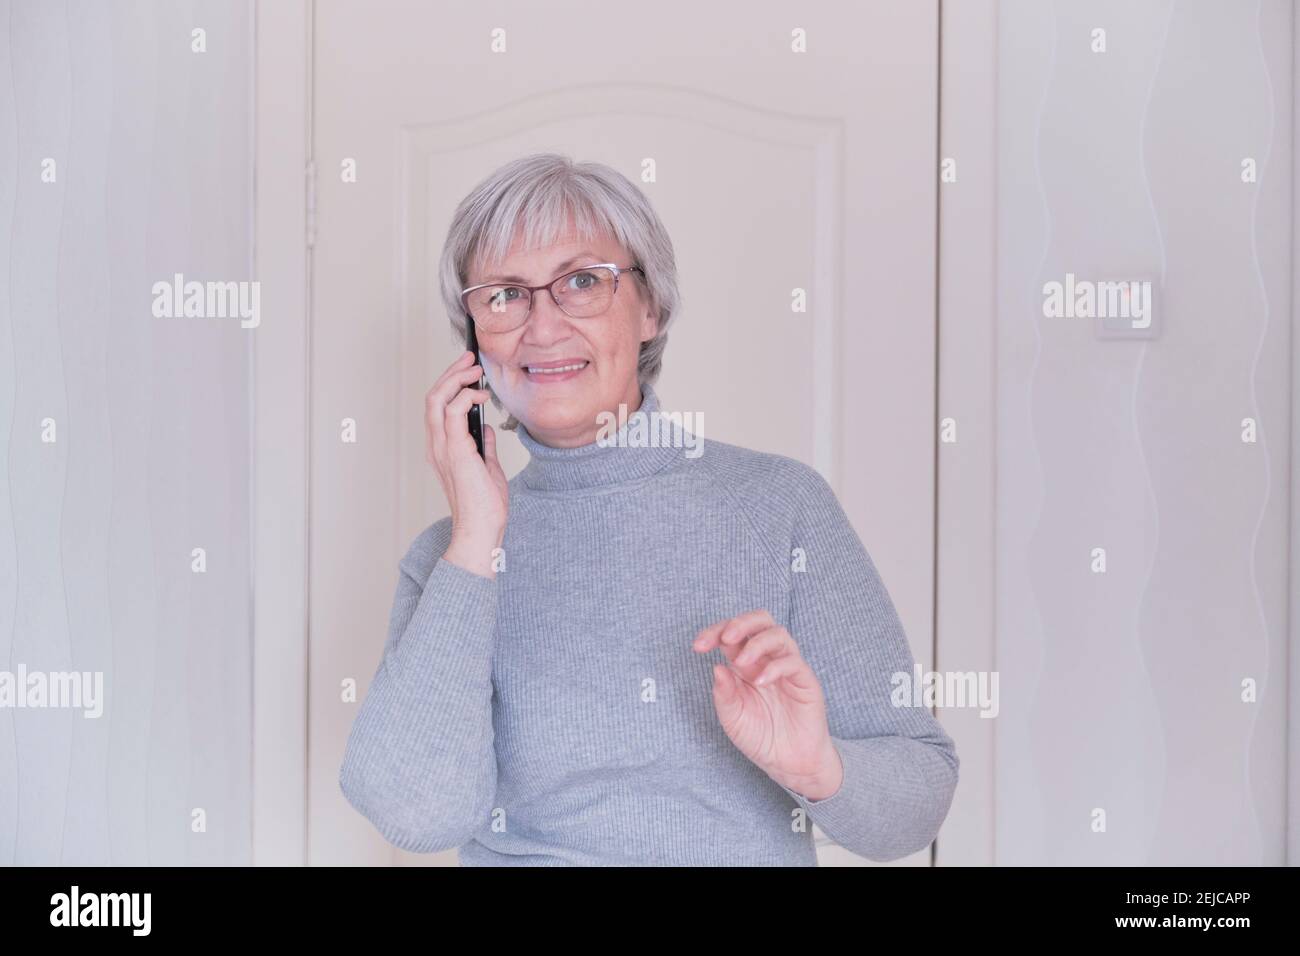 Eine grauhaarige ältere Frau mit Brille und einem grauen Rollkragen, die zu Hause auf dem Handy spricht. Menschen verbinden, Kommunikation. Lifestyle-Moment. Stockfoto